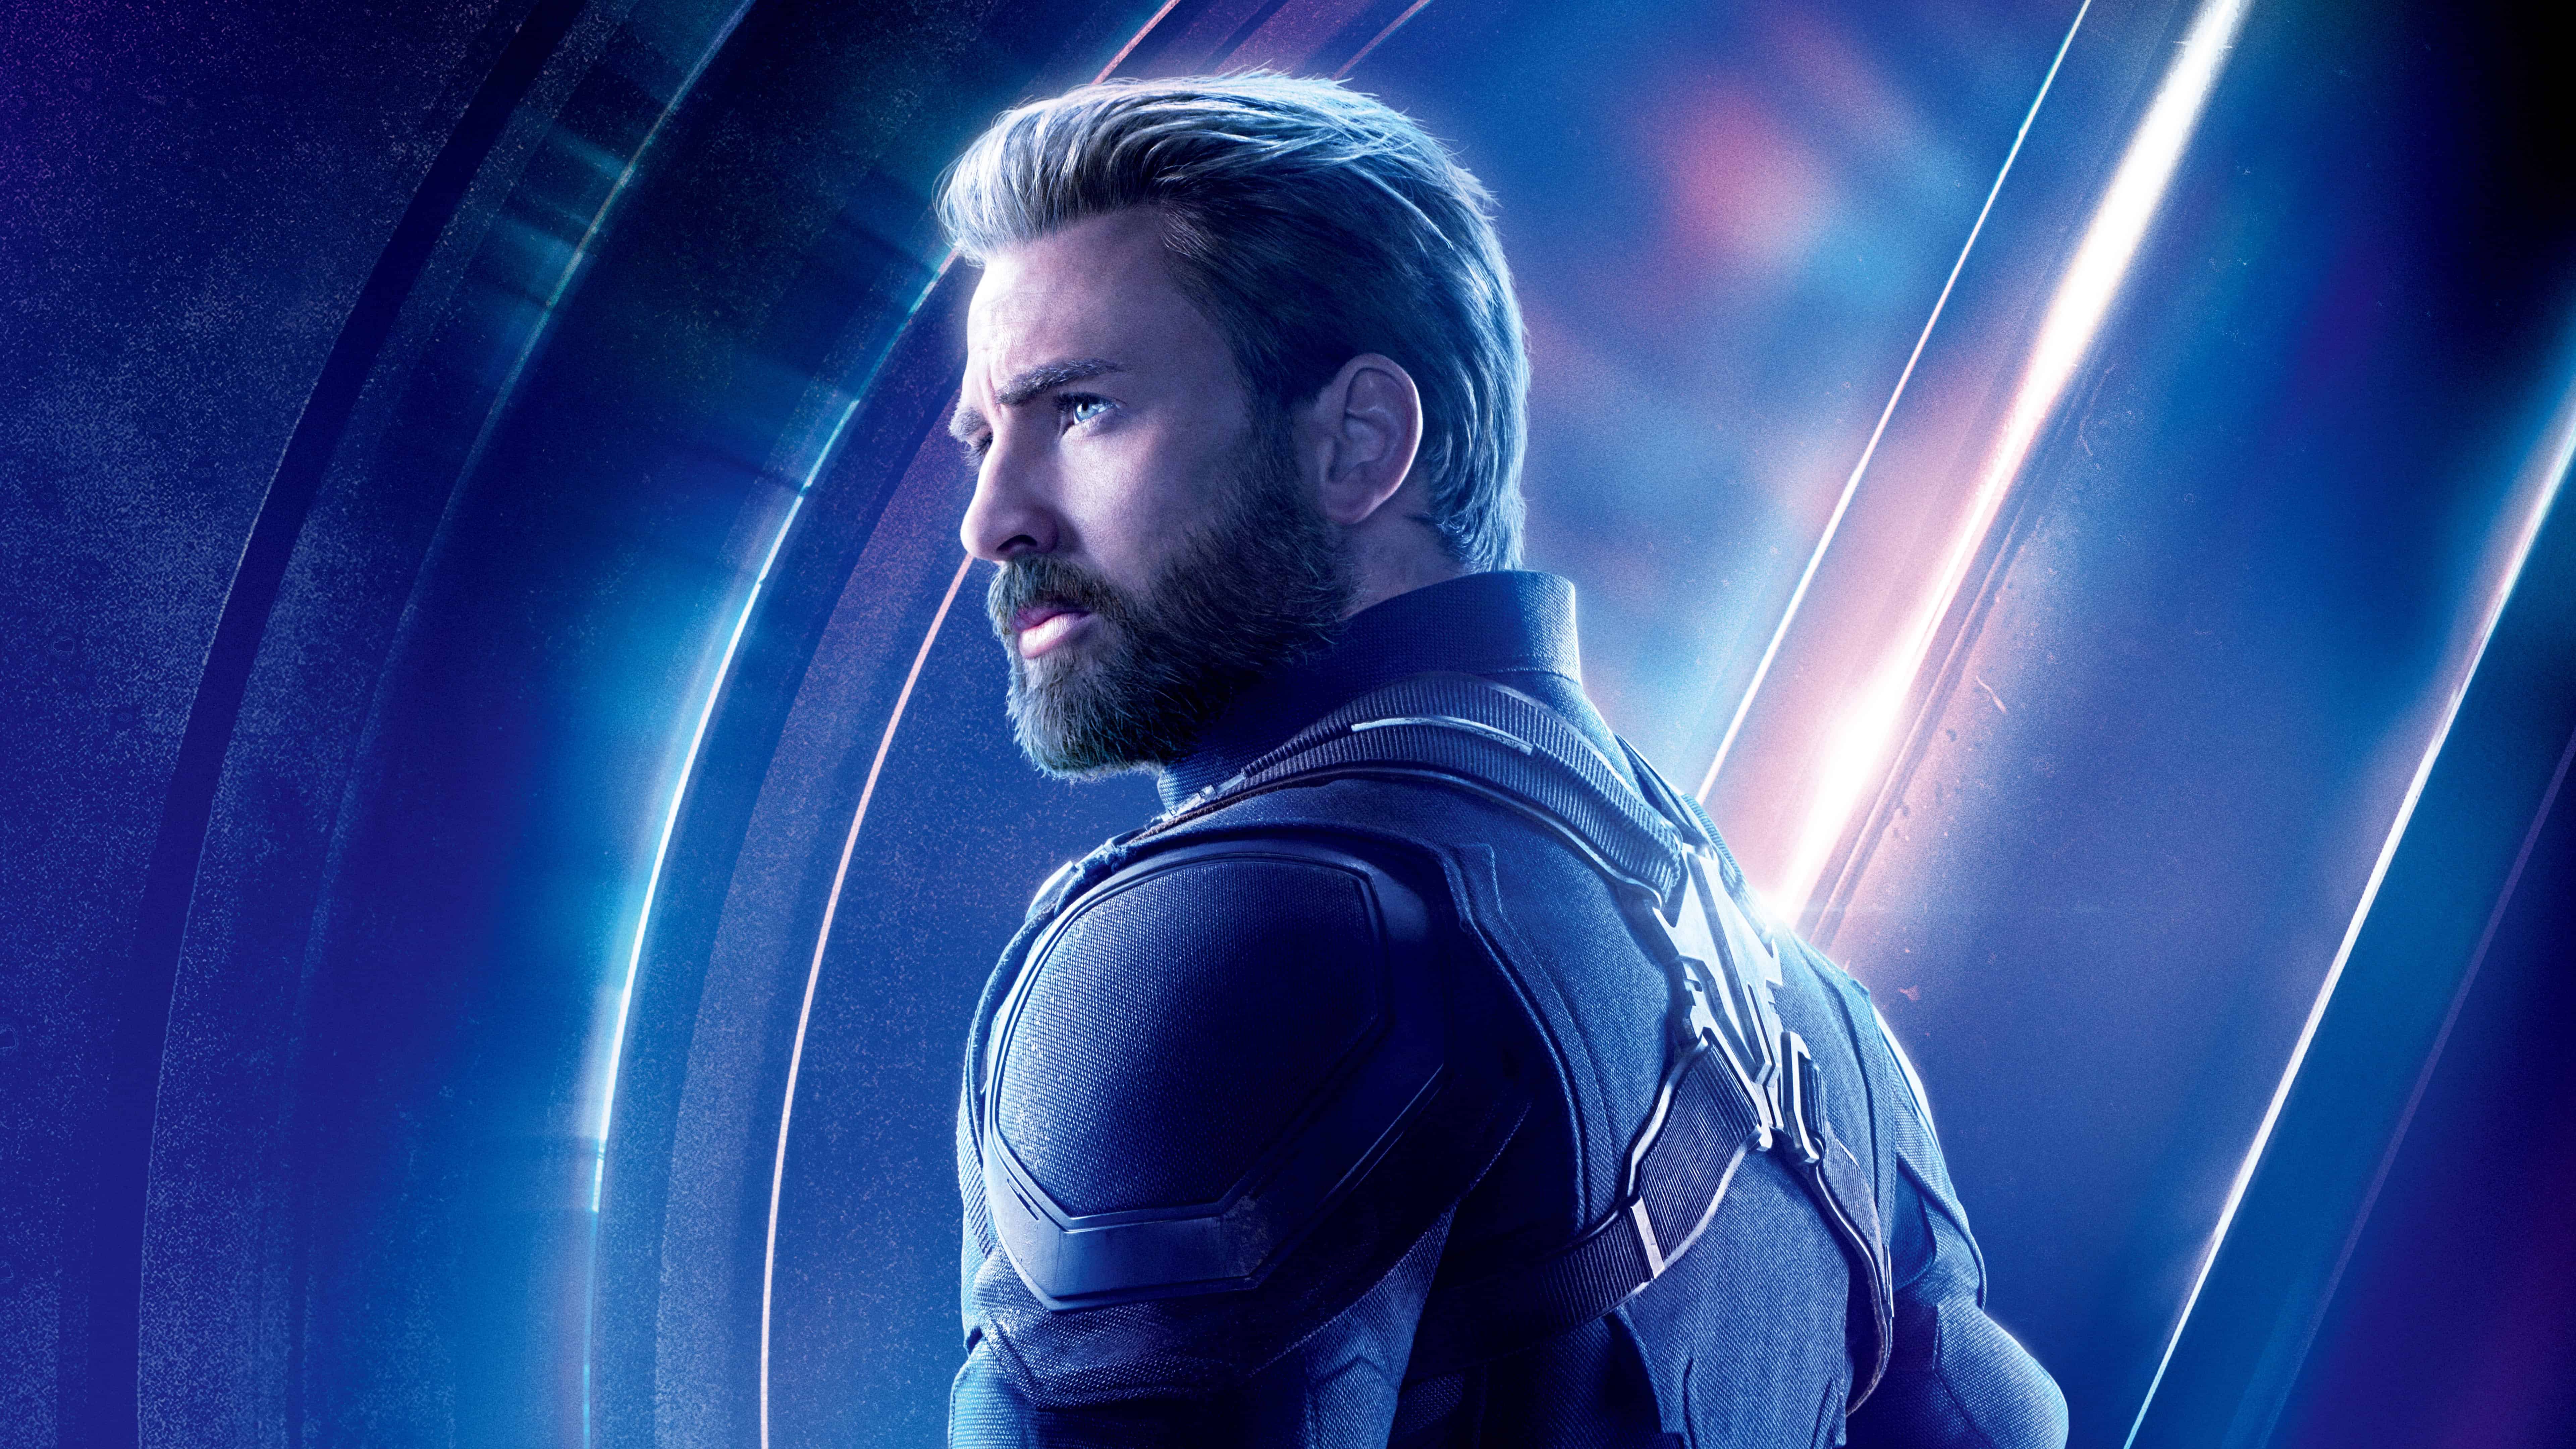 Captain America Endgame Poster 4k